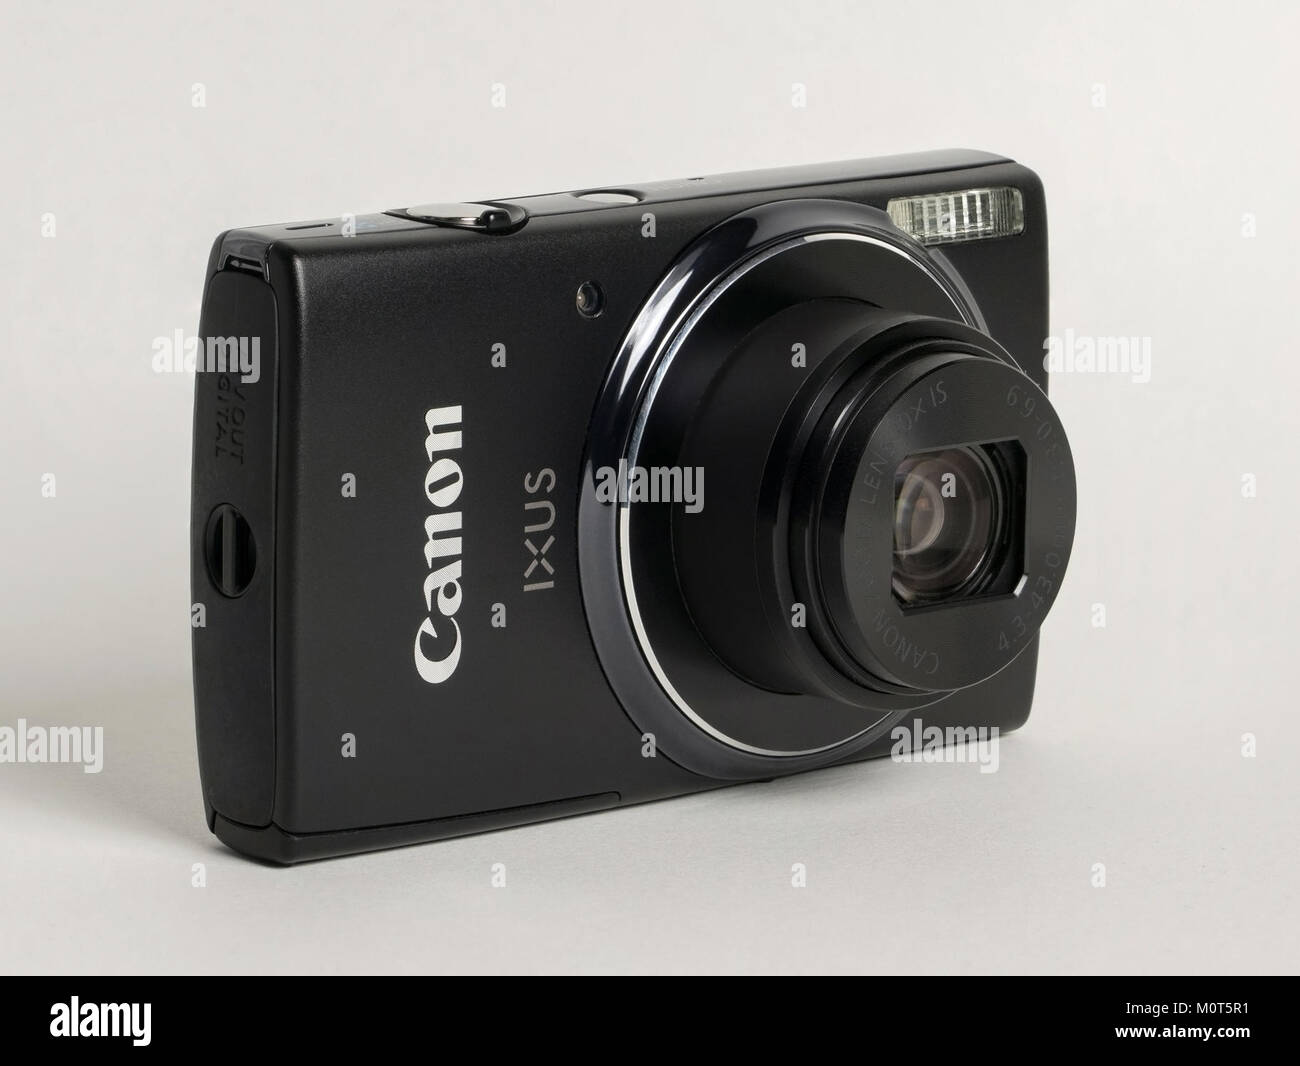 Canon IXUS 155 Stock Photo - Alamy